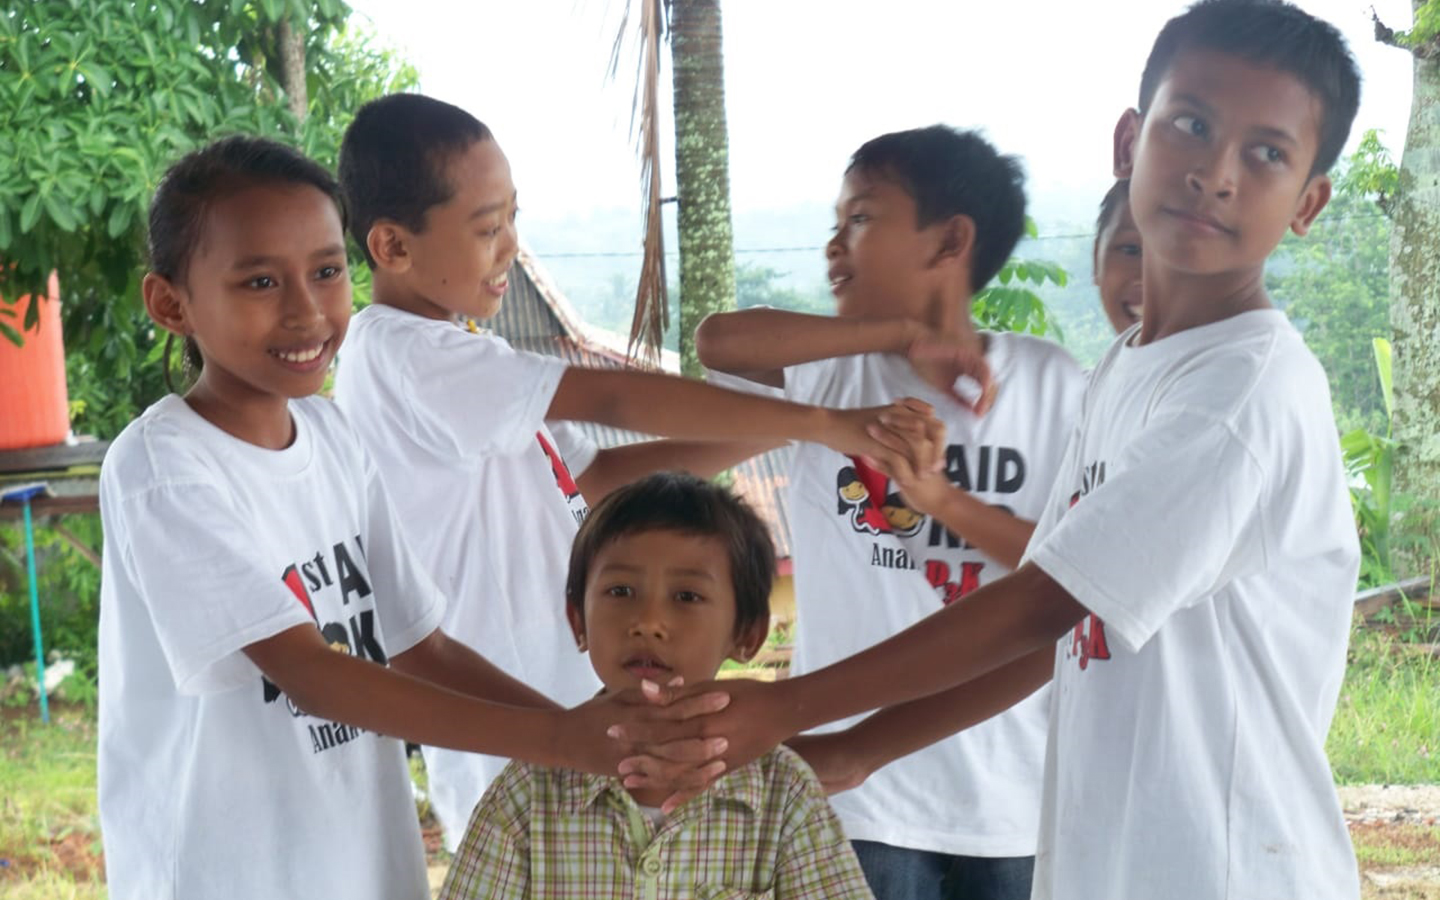 Anak-anak sedang bermain peran dalam pelatihan pertolongan pertama/Fist AID, difasilitasi oleh relawan dari Yayasan SHEEP Indonesia Jogjakarta. 